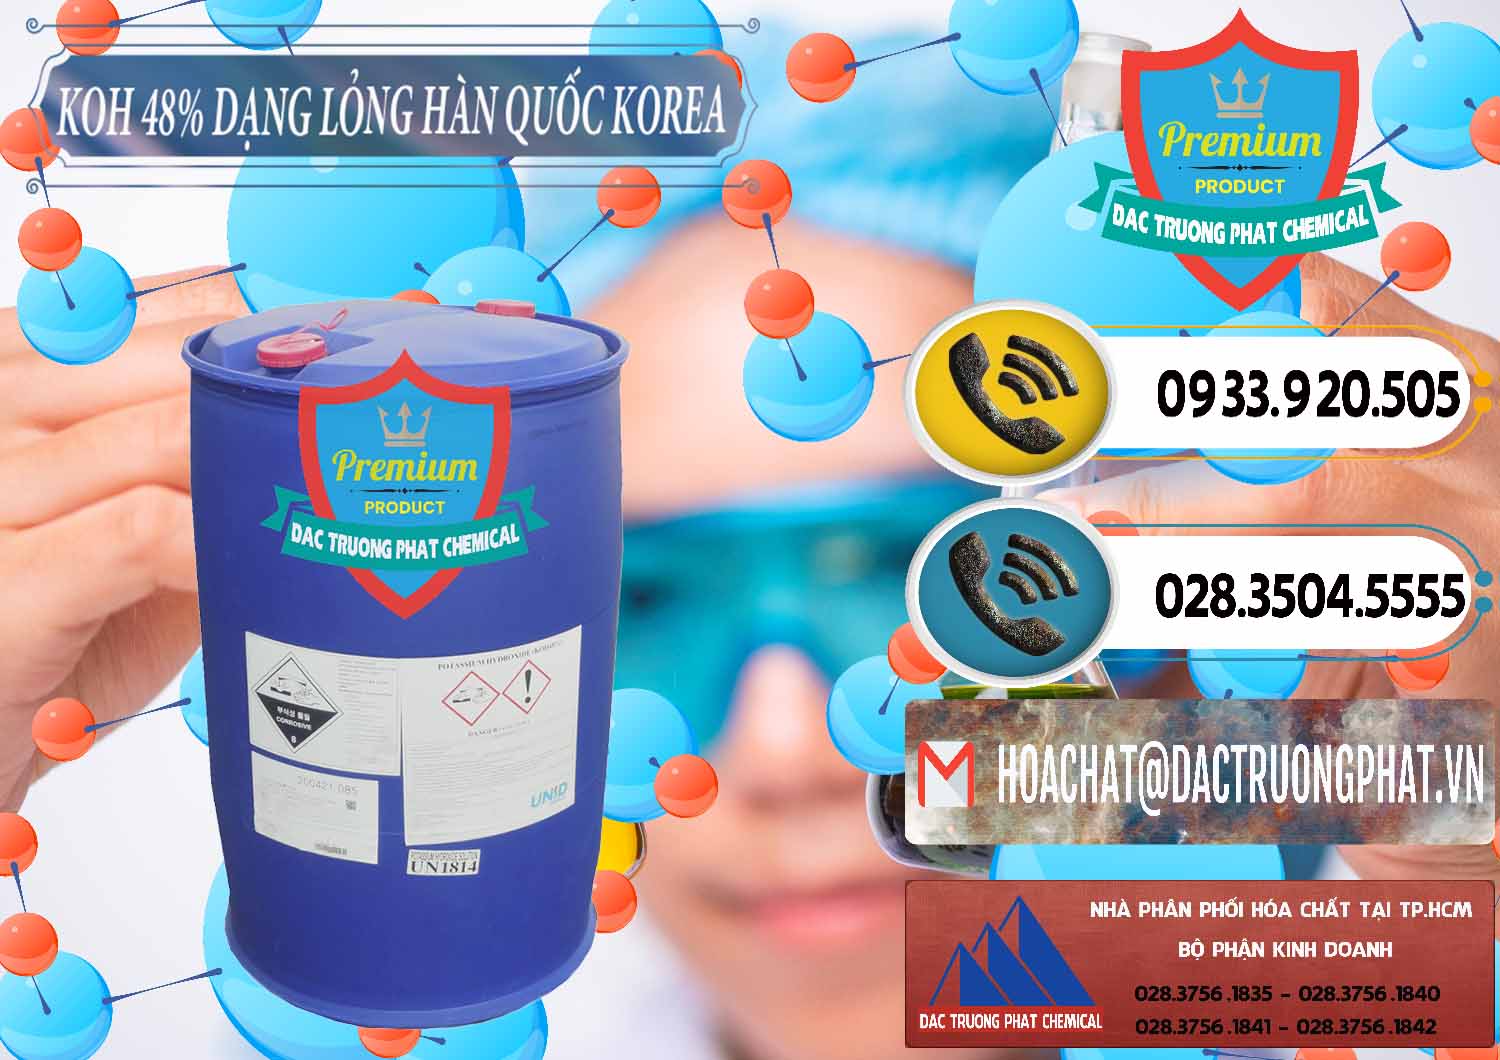 Cty chuyên phân phối ( bán ) KOH Dạng Nước – Potassium Hydroxide Lỏng 48% Hàn Quốc Korea - 0293 - Đơn vị chuyên bán _ phân phối hóa chất tại TP.HCM - hoachatdetnhuom.vn